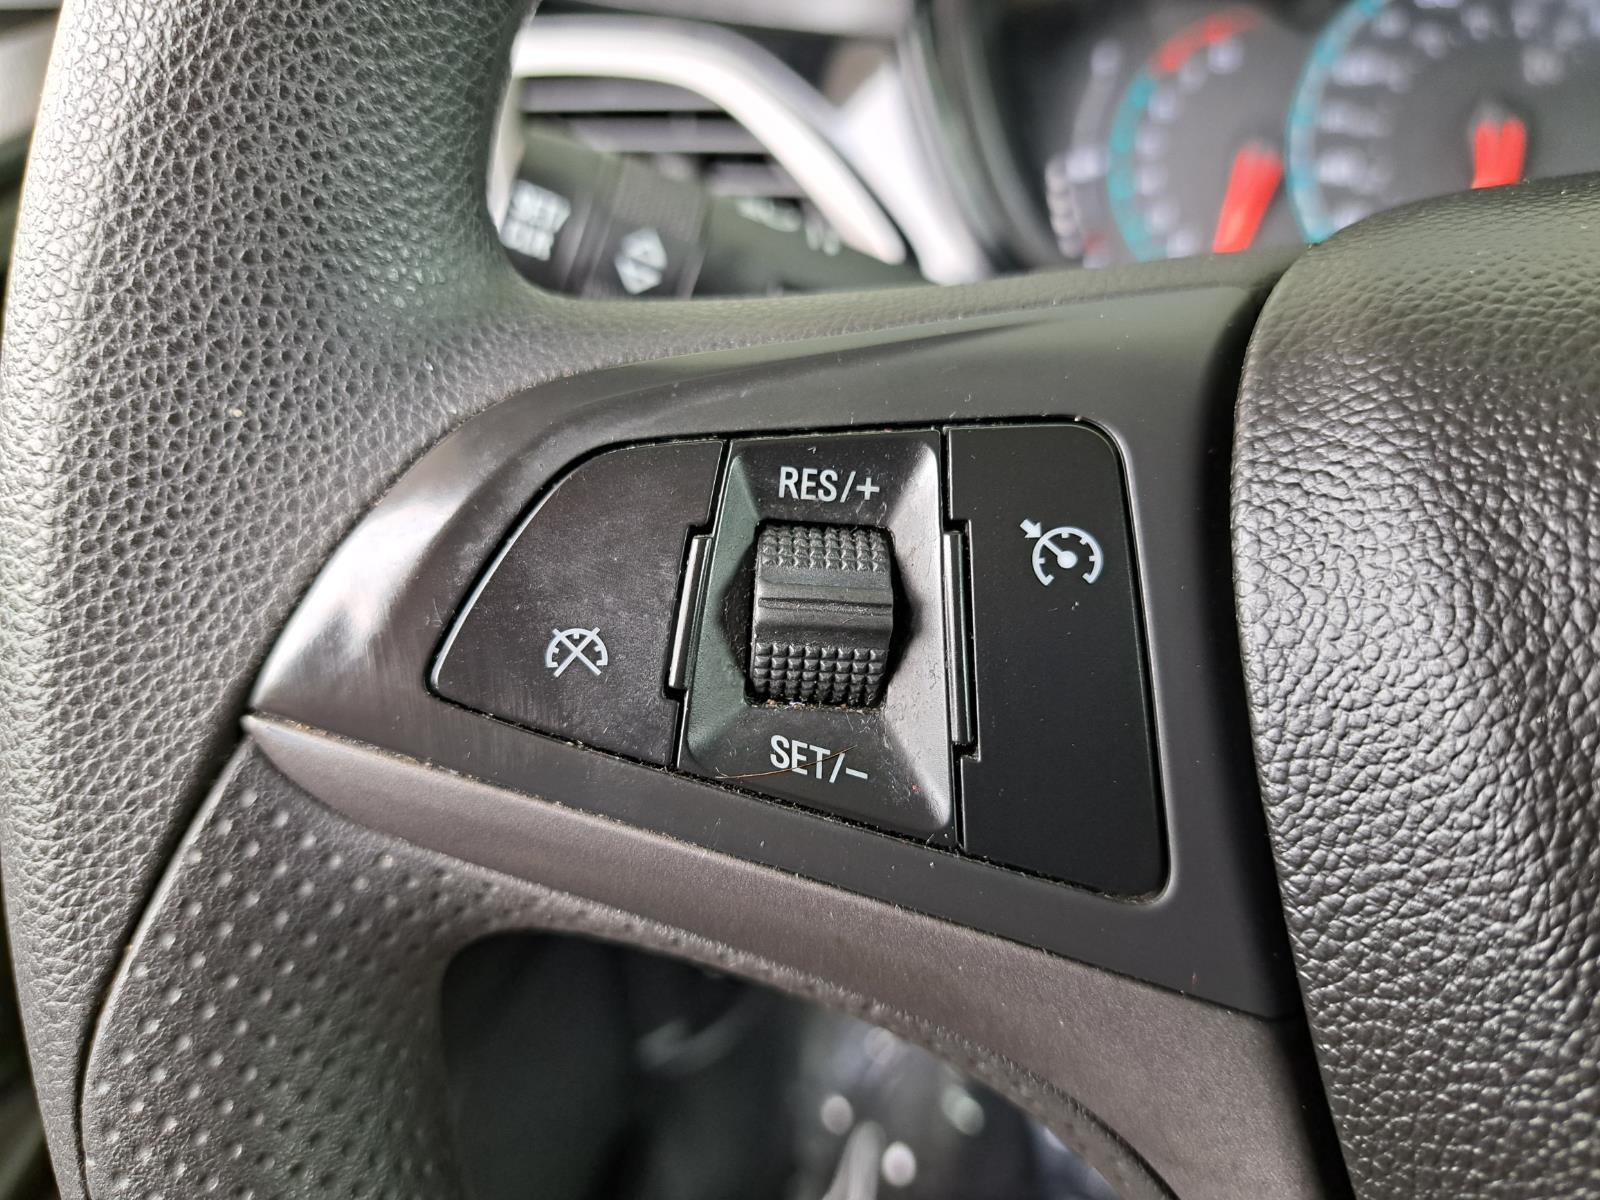 2021 Chevrolet Spark 1LT Hatchback 4 Dr. Front Wheel Drive mobile thumbnail 14